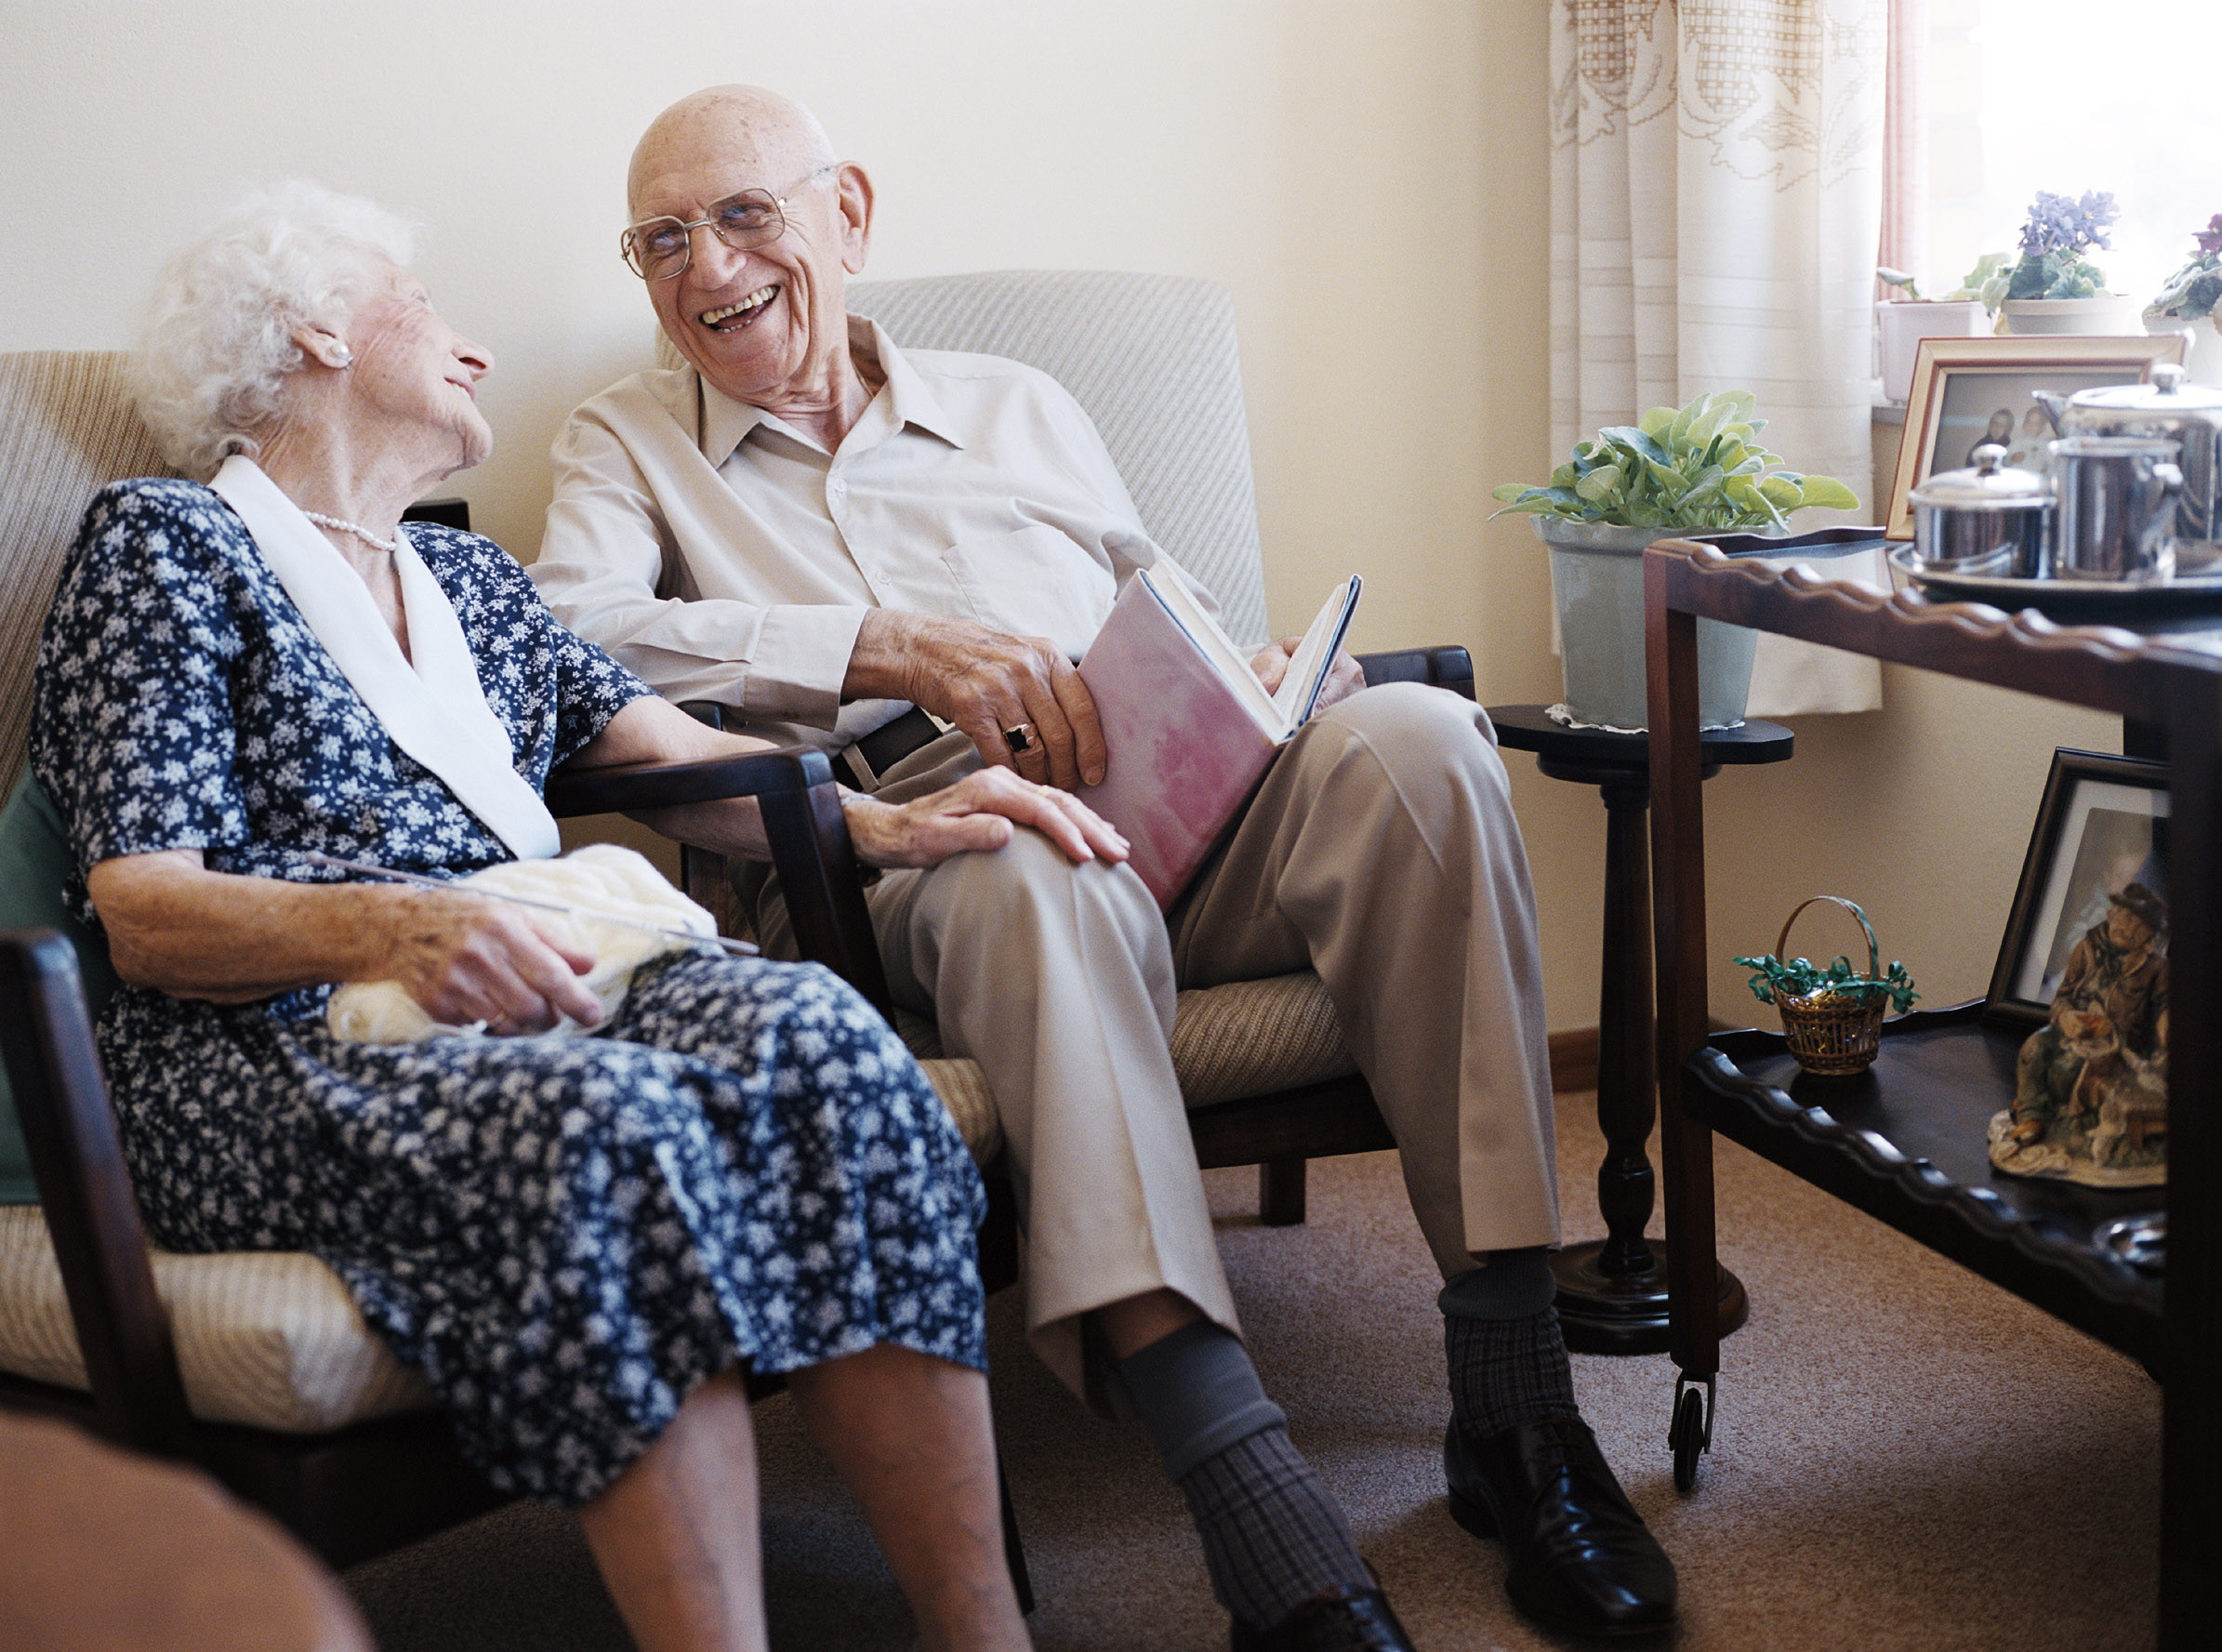 В старости пенсионеры остро чувствуют недостаток общения и внимания. Одиночество пагубно влияет на их психическое здоровье. Из-за этого у них появляются психические расстройства, депрессия, неврозы, деменция, болезнь Альцгеймера. Оставлять стариков наедине с собой при таких заболеваниях — небезопасно. Пансионат для пожилых людей "Долгожители" в Копанском обеспечивает престарелым людям комфортную и счастливую старость. Мы позаботимся о вашем близком престарелом родственнике, окружим вниманием и добротой.  Пансионат для пожилых с деменцией  Частный дом престарелых в Копанском присматривает за престарелыми с различными заболеваниями: психическими и физическими. Благодаря комфортным условиям проживания, общению со сверстниками и доброжелательному персоналу, старики намного лучше чувствуют себя в доме престарелых "Долгожители" в Копанском, чем дома. Психически больным людям постоянно оказывают помощь психологи медицинского центра, с которым мы сотрудничаем. Пожилым с деменцией наши сиделки помогают во всем: одеться, поесть, умыться. Сопровождают престарелых людей на прогулке. Психологи помогают старикам справиться с тревожностью, раздражительностью, нарушениями сна. Сестры милосердия подолгу разговаривают с пенсионерами, помогают адаптироваться в коллективе. Деменцию излечить невозможно, но замедлить прогресс заболевания, помочь пожилому человеку жить с этой болезнью — в наших силах. Какие документы нужны для заселения в дом престарелых Если вы решили определить пожилого родственника в дом-интернат для престарелых, то первое, что нужно сделать — уговорить пенсионера на переезд. Без письменного согласия престарелого человека — оформление невозможно. Список документов: -	Письменное согласие пенсионера на проживание в частном пансионате для престарелых в Копанском. -	Паспорт родственника или опекуна, который будет оплачивать услуги дома-интерната для престарелых и инвалидов "Долгожители" в Копанском. -	Паспорт старика. -	Медкарта. -	Справка от терапевта. -	Полис ОМС. -	СНИЛС. Дополнительно нужно будет предоставить: -	Ист